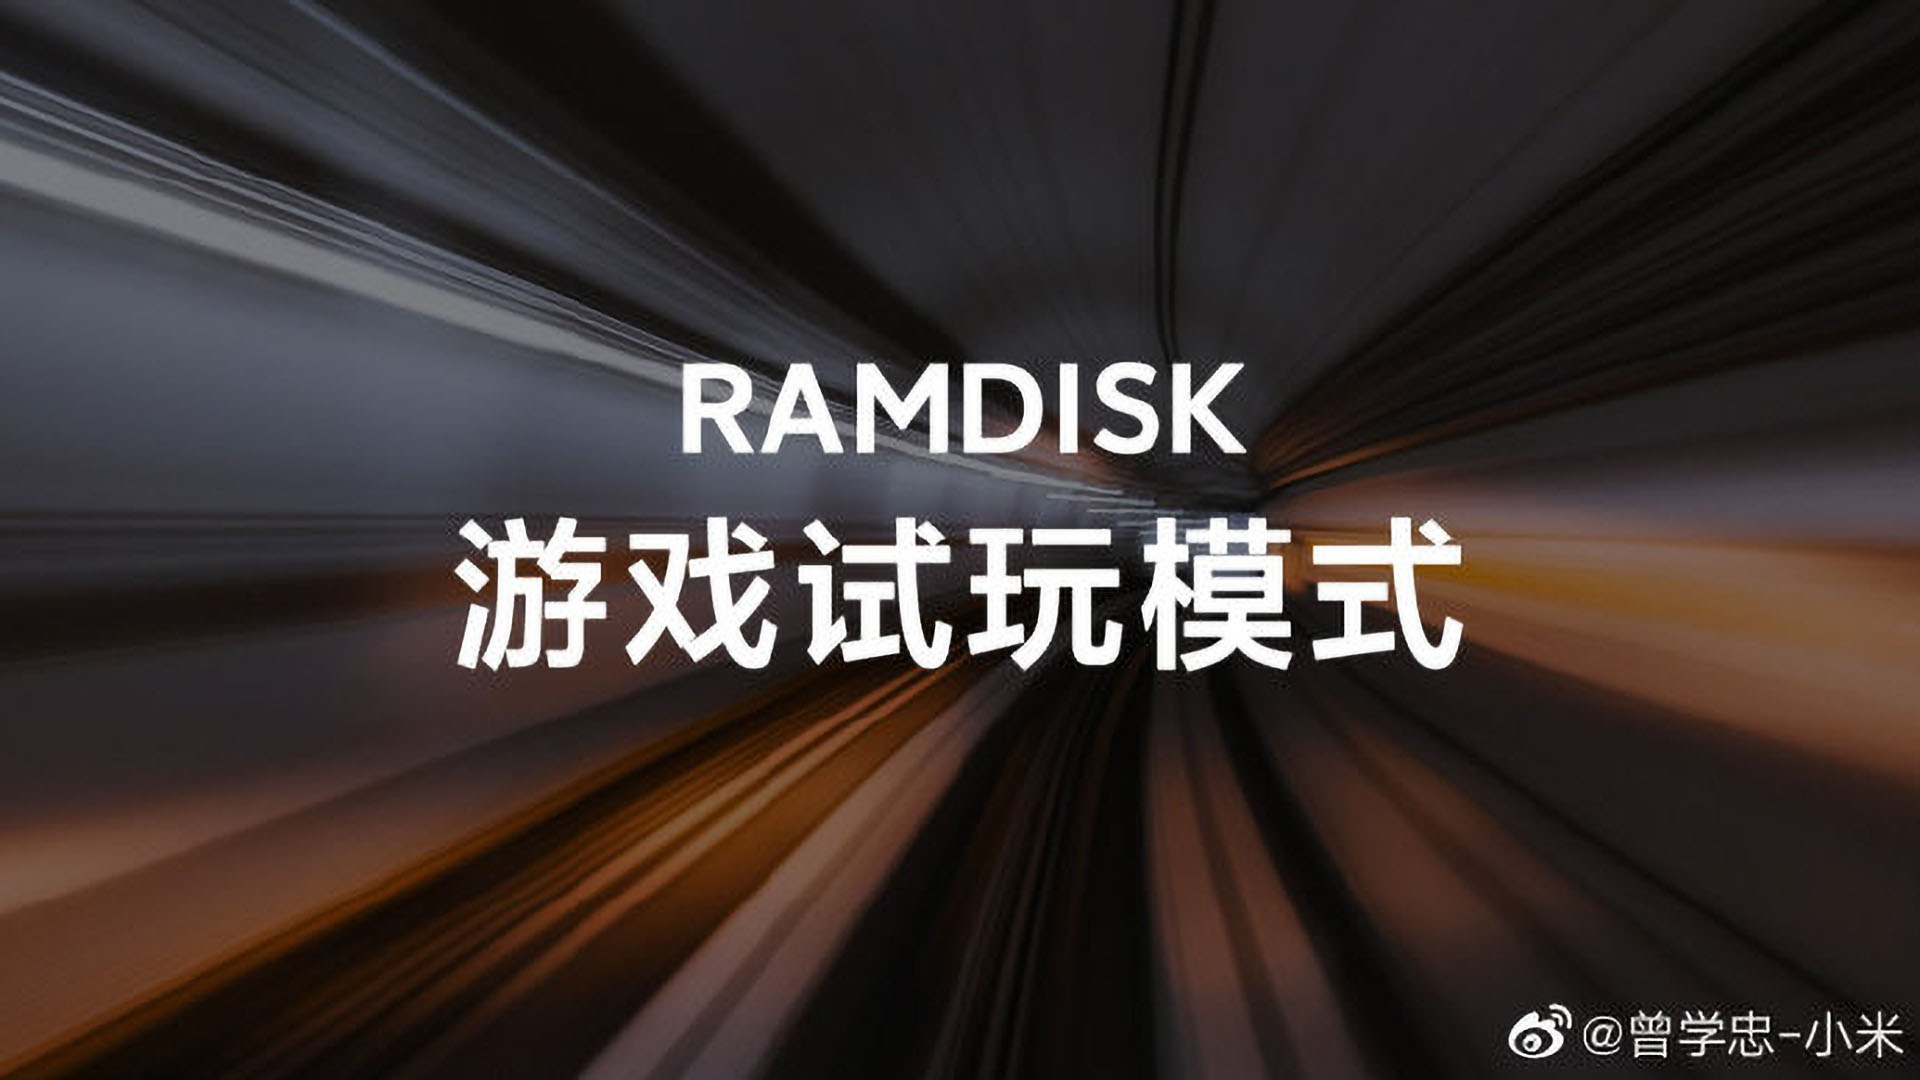 Xiaomi RAMDISK’i Mobile Taşıdı: Gerçekten Oyun Performansını Arttırır Mı, Gerçekte Faydası Var Mı?